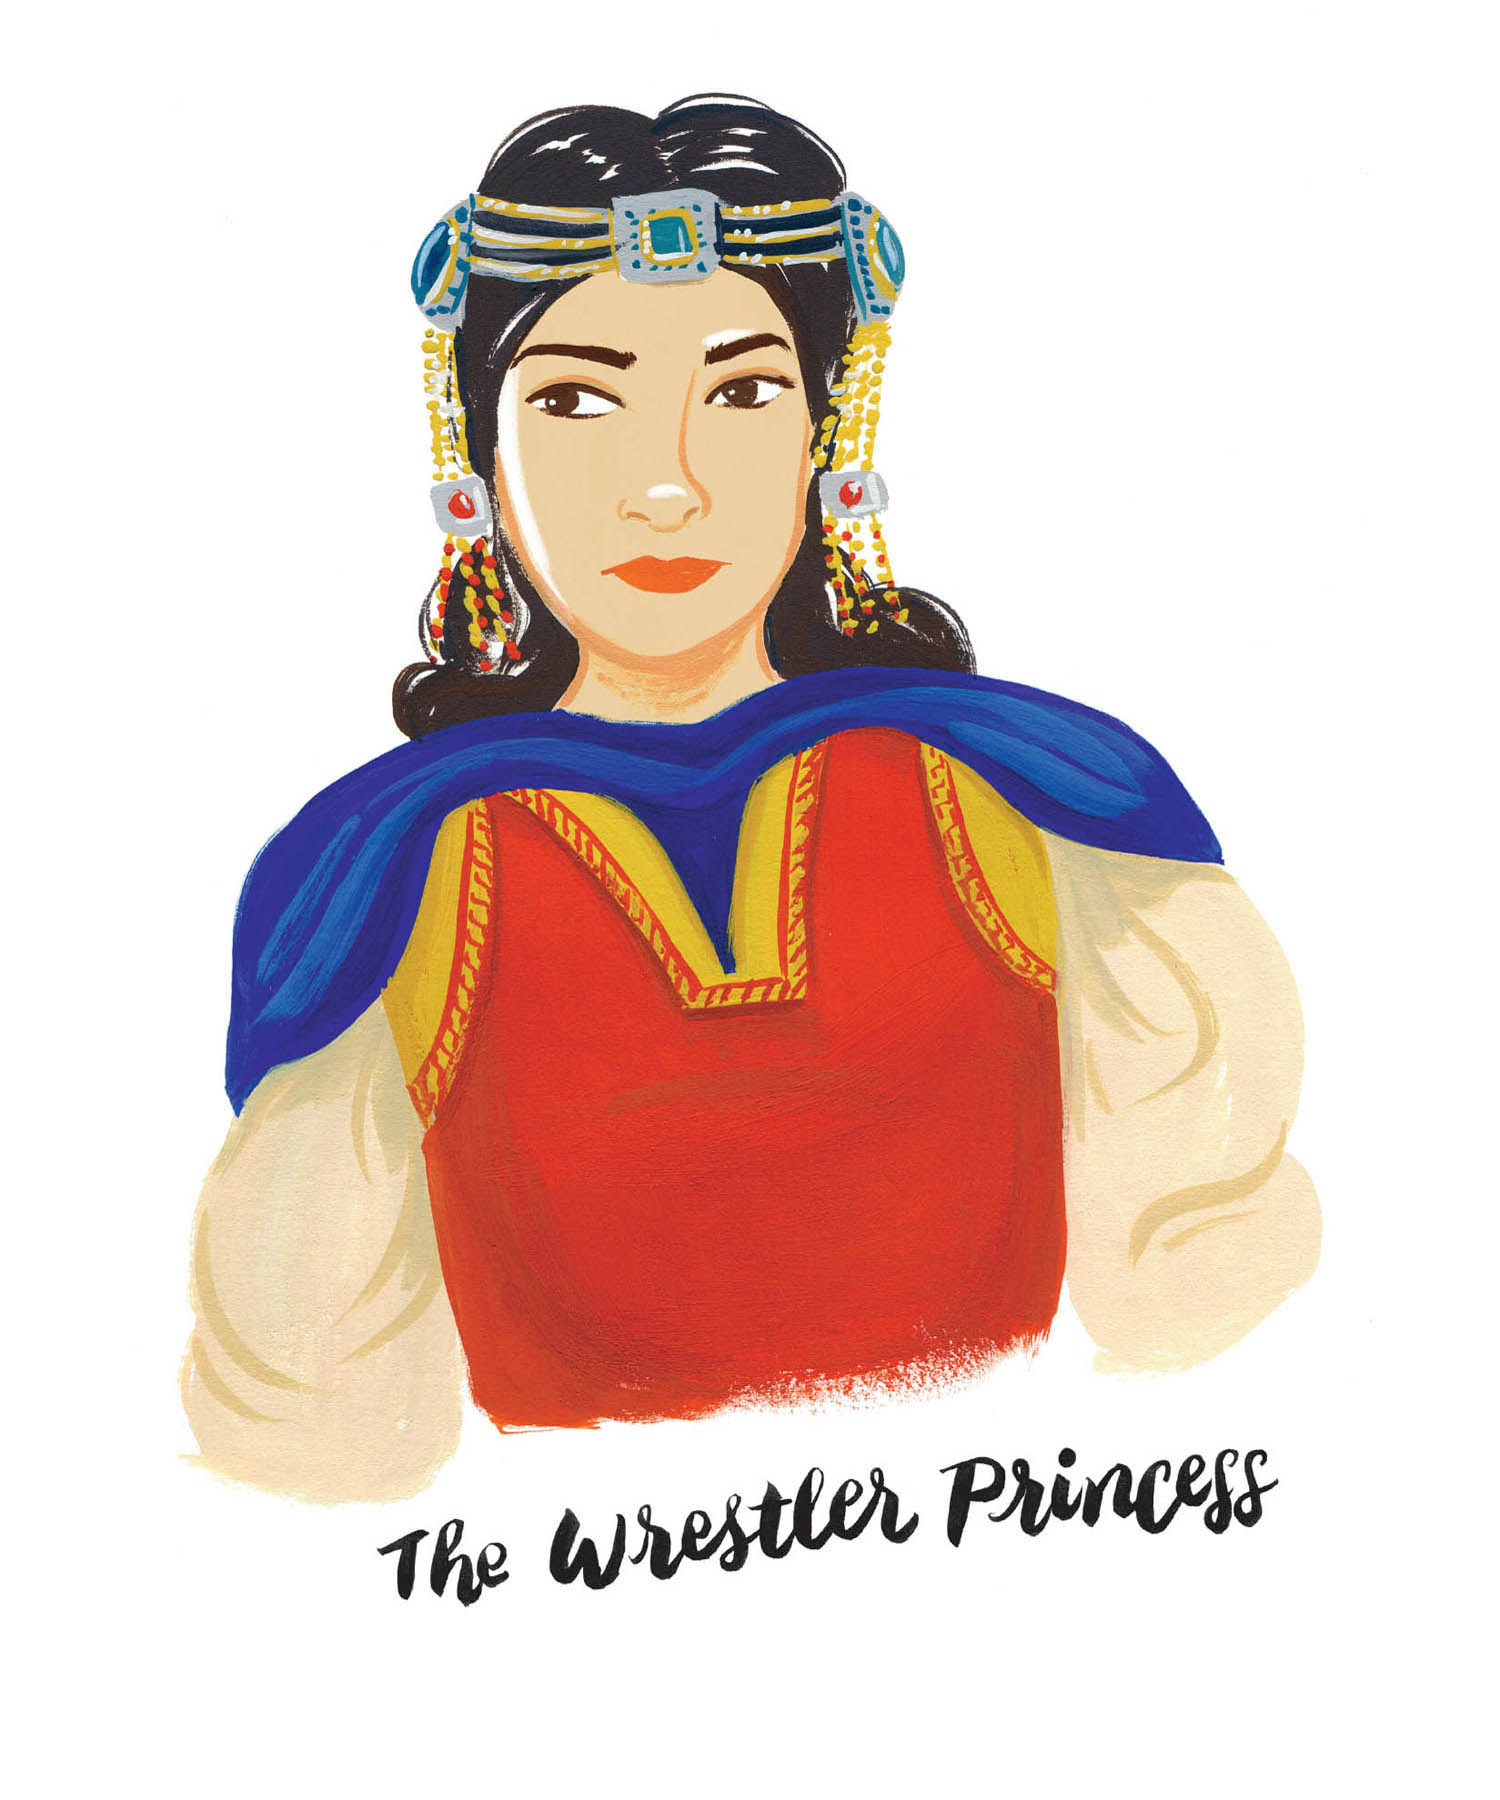 The Wrestler Princess